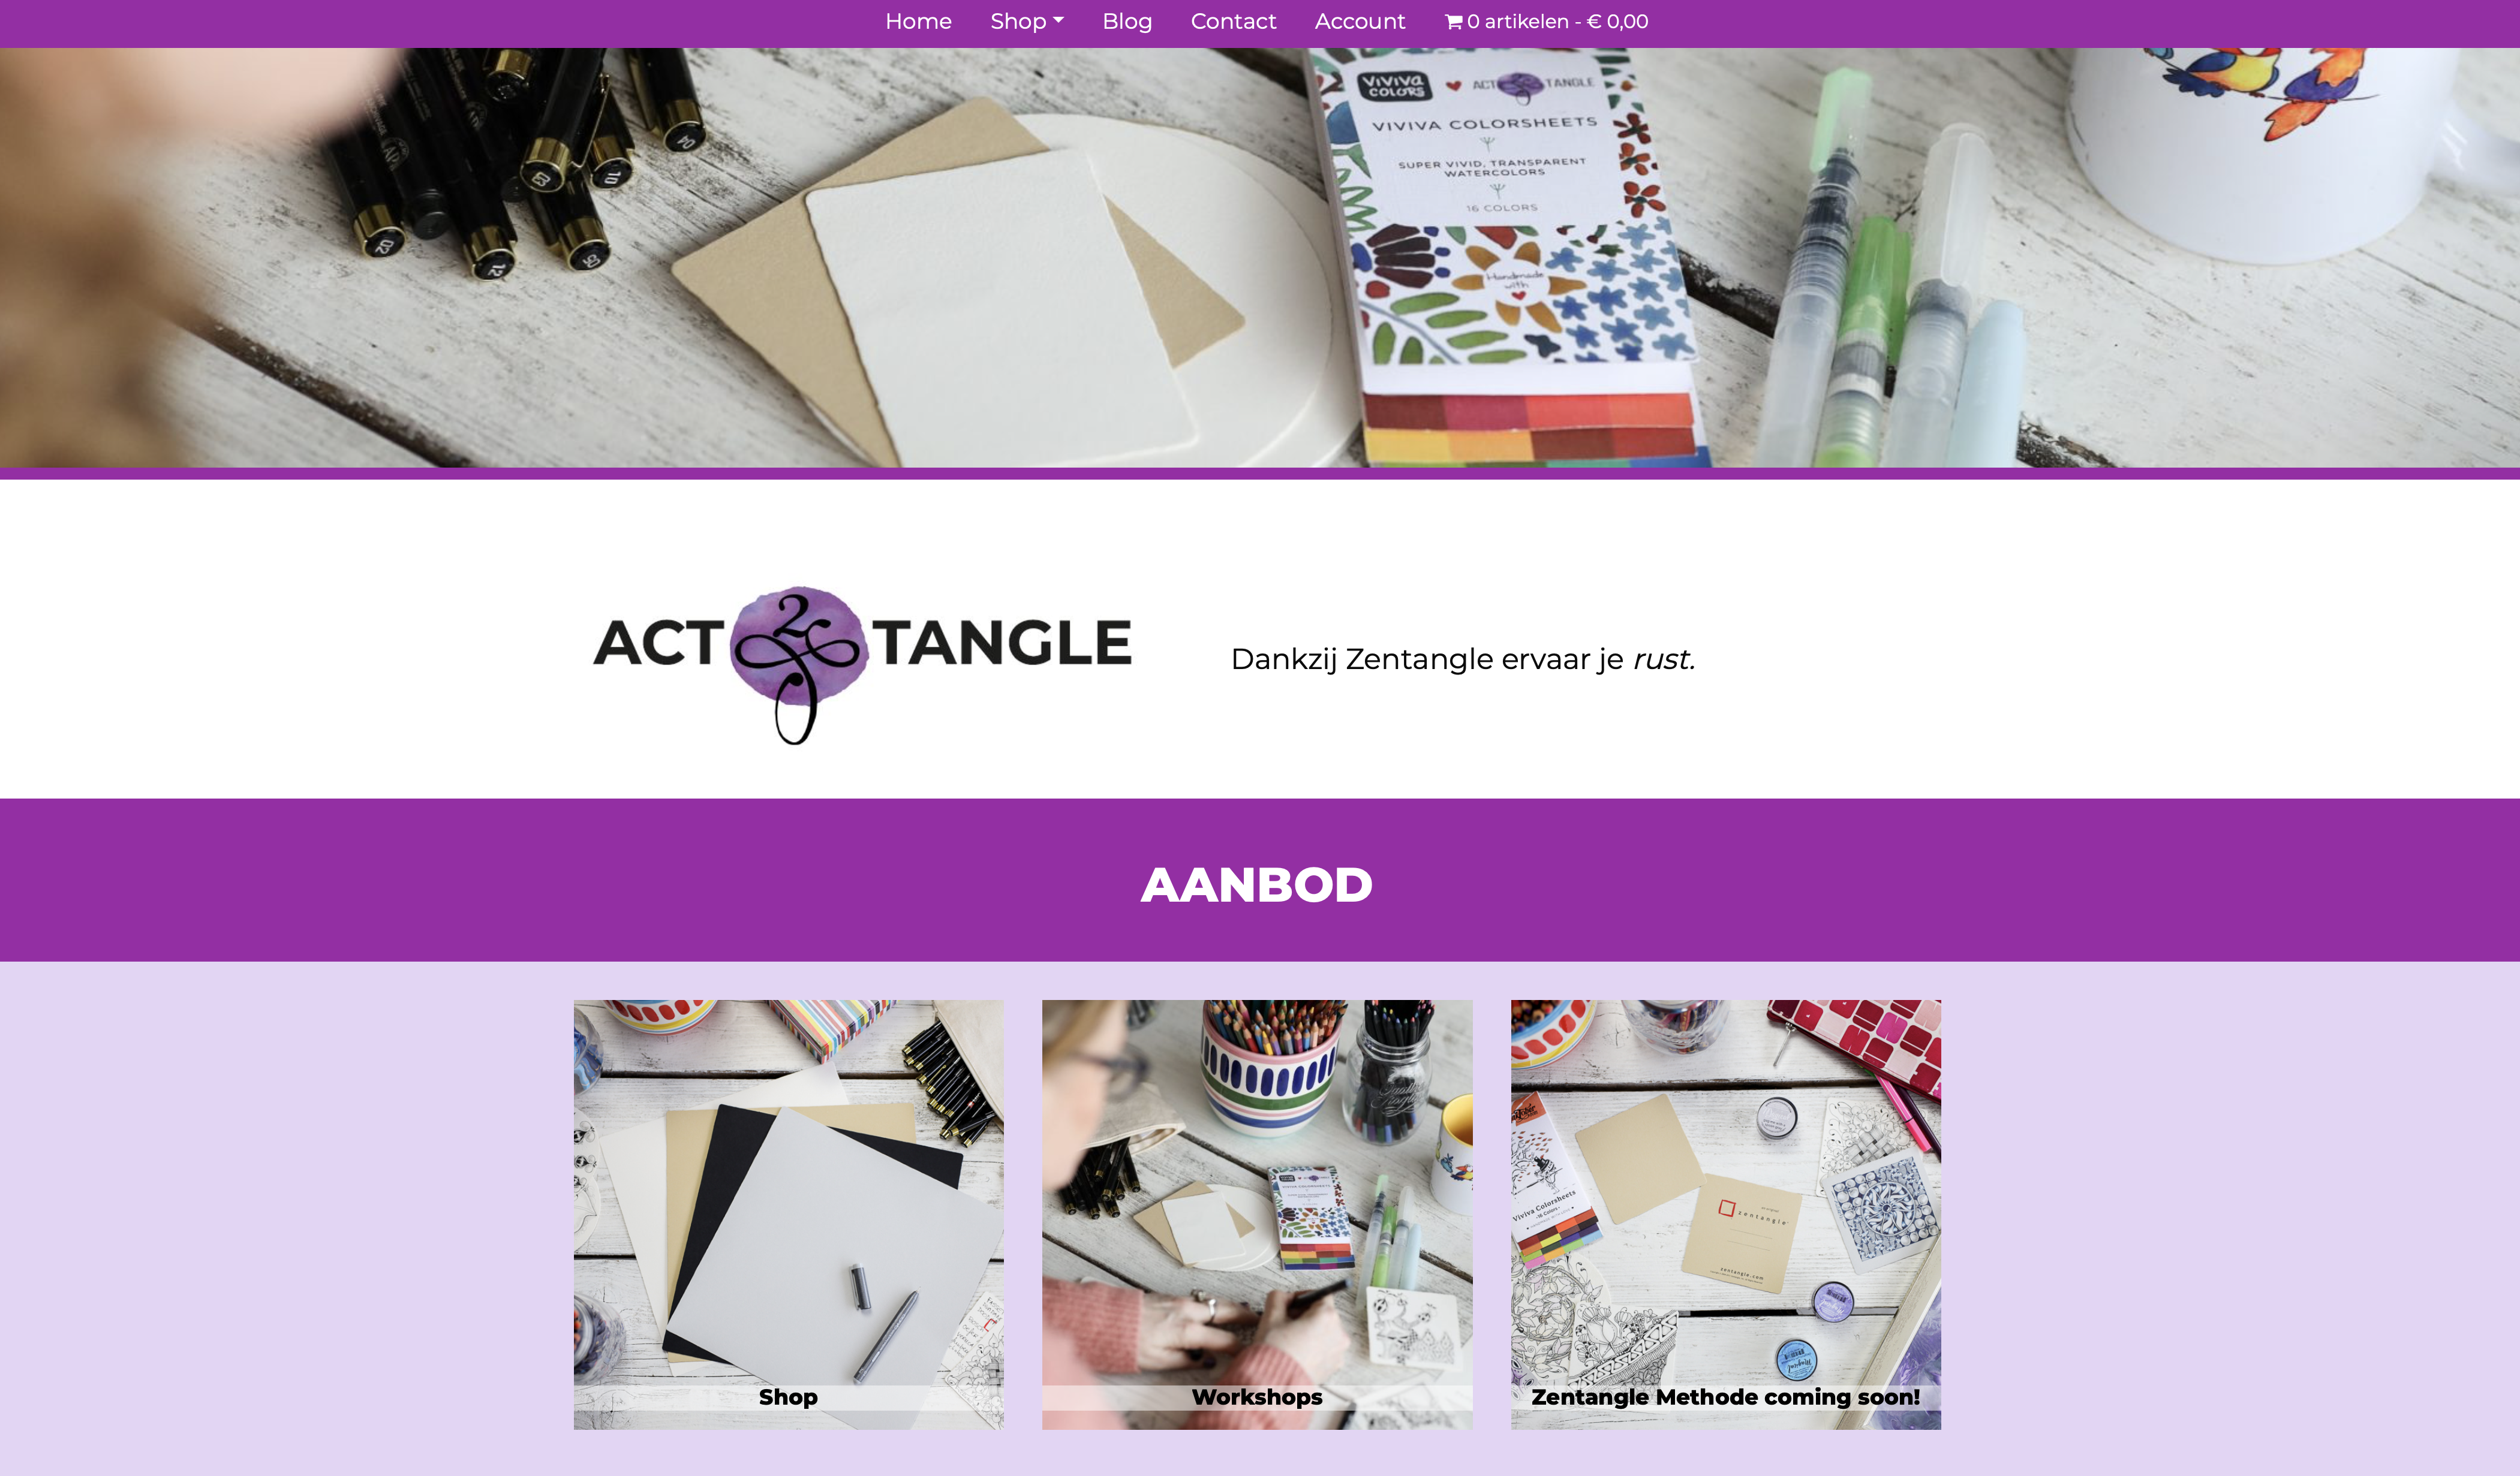 Waarom een nieuwe website voor Act2Tangle?